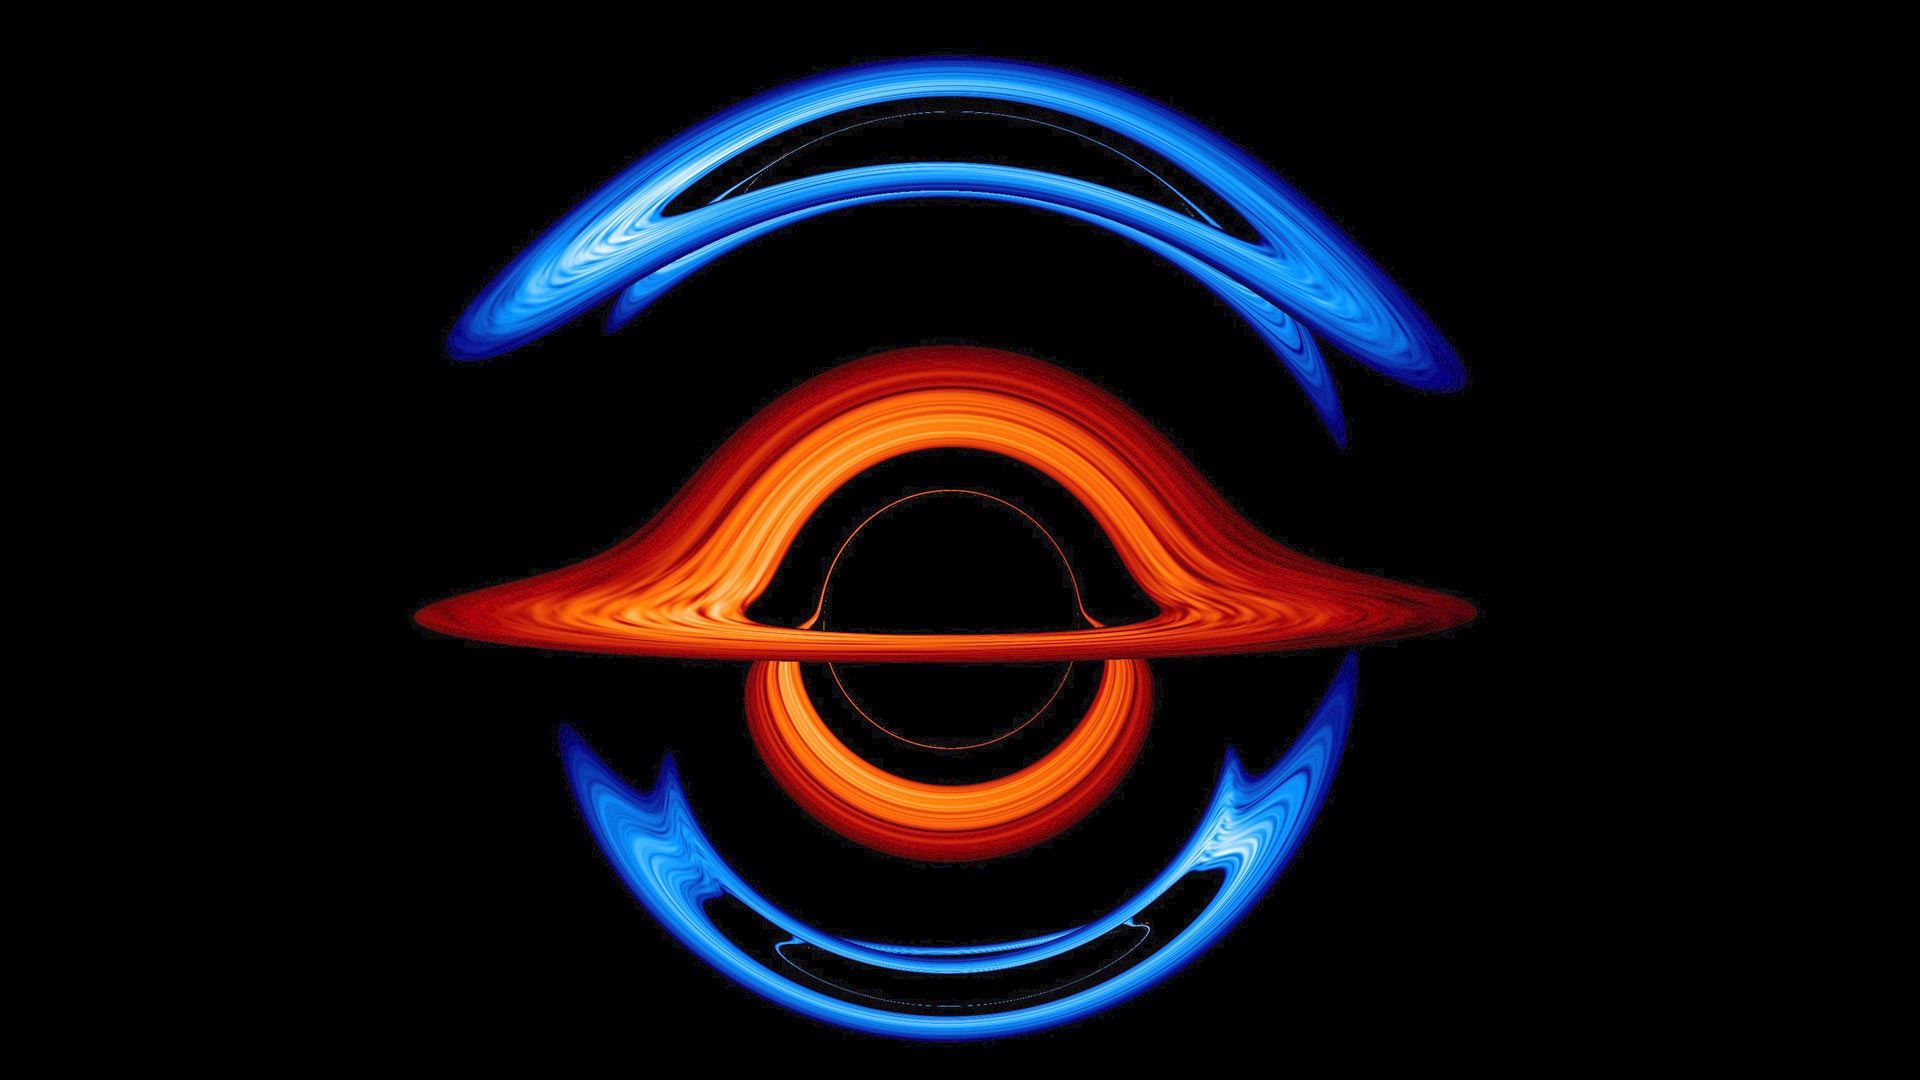 Black Hole Simulation 3d Live Wallpaper Image Num 57